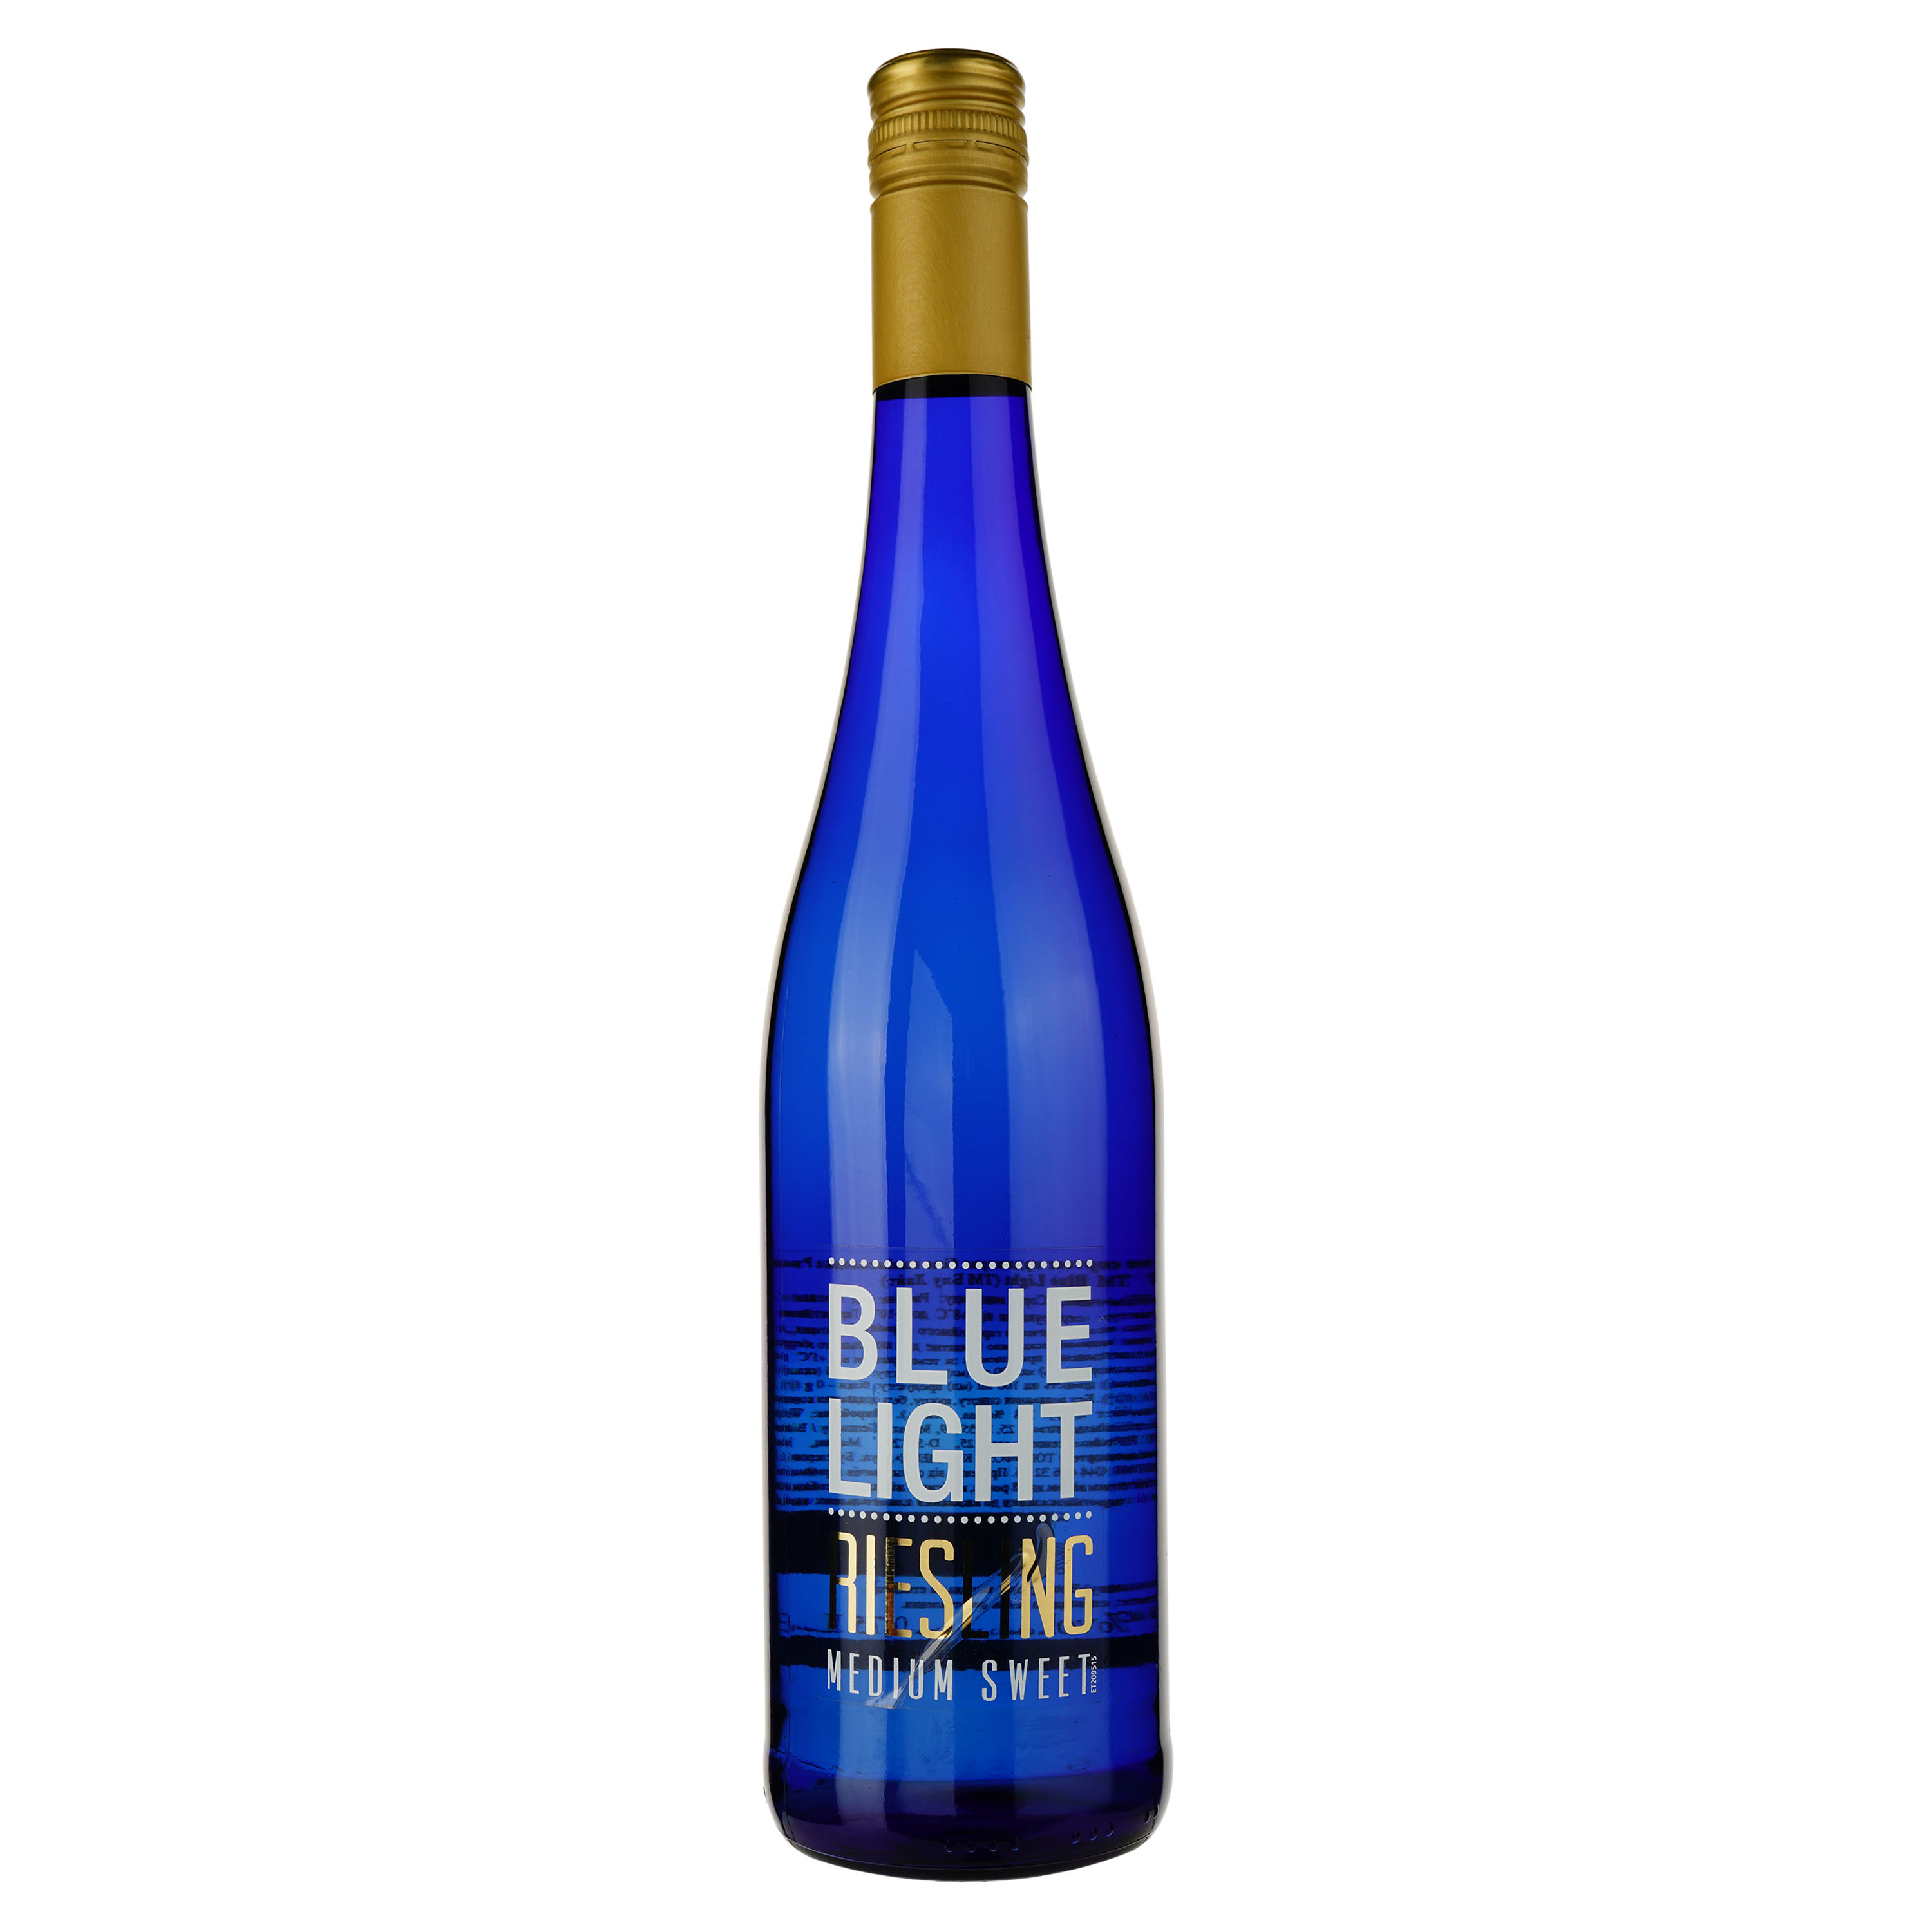 Вино Hechtsheim Riesling Blue Light Medium Sweet белое полусладкое 0.75 л (688966) 2 шт. - фото 2